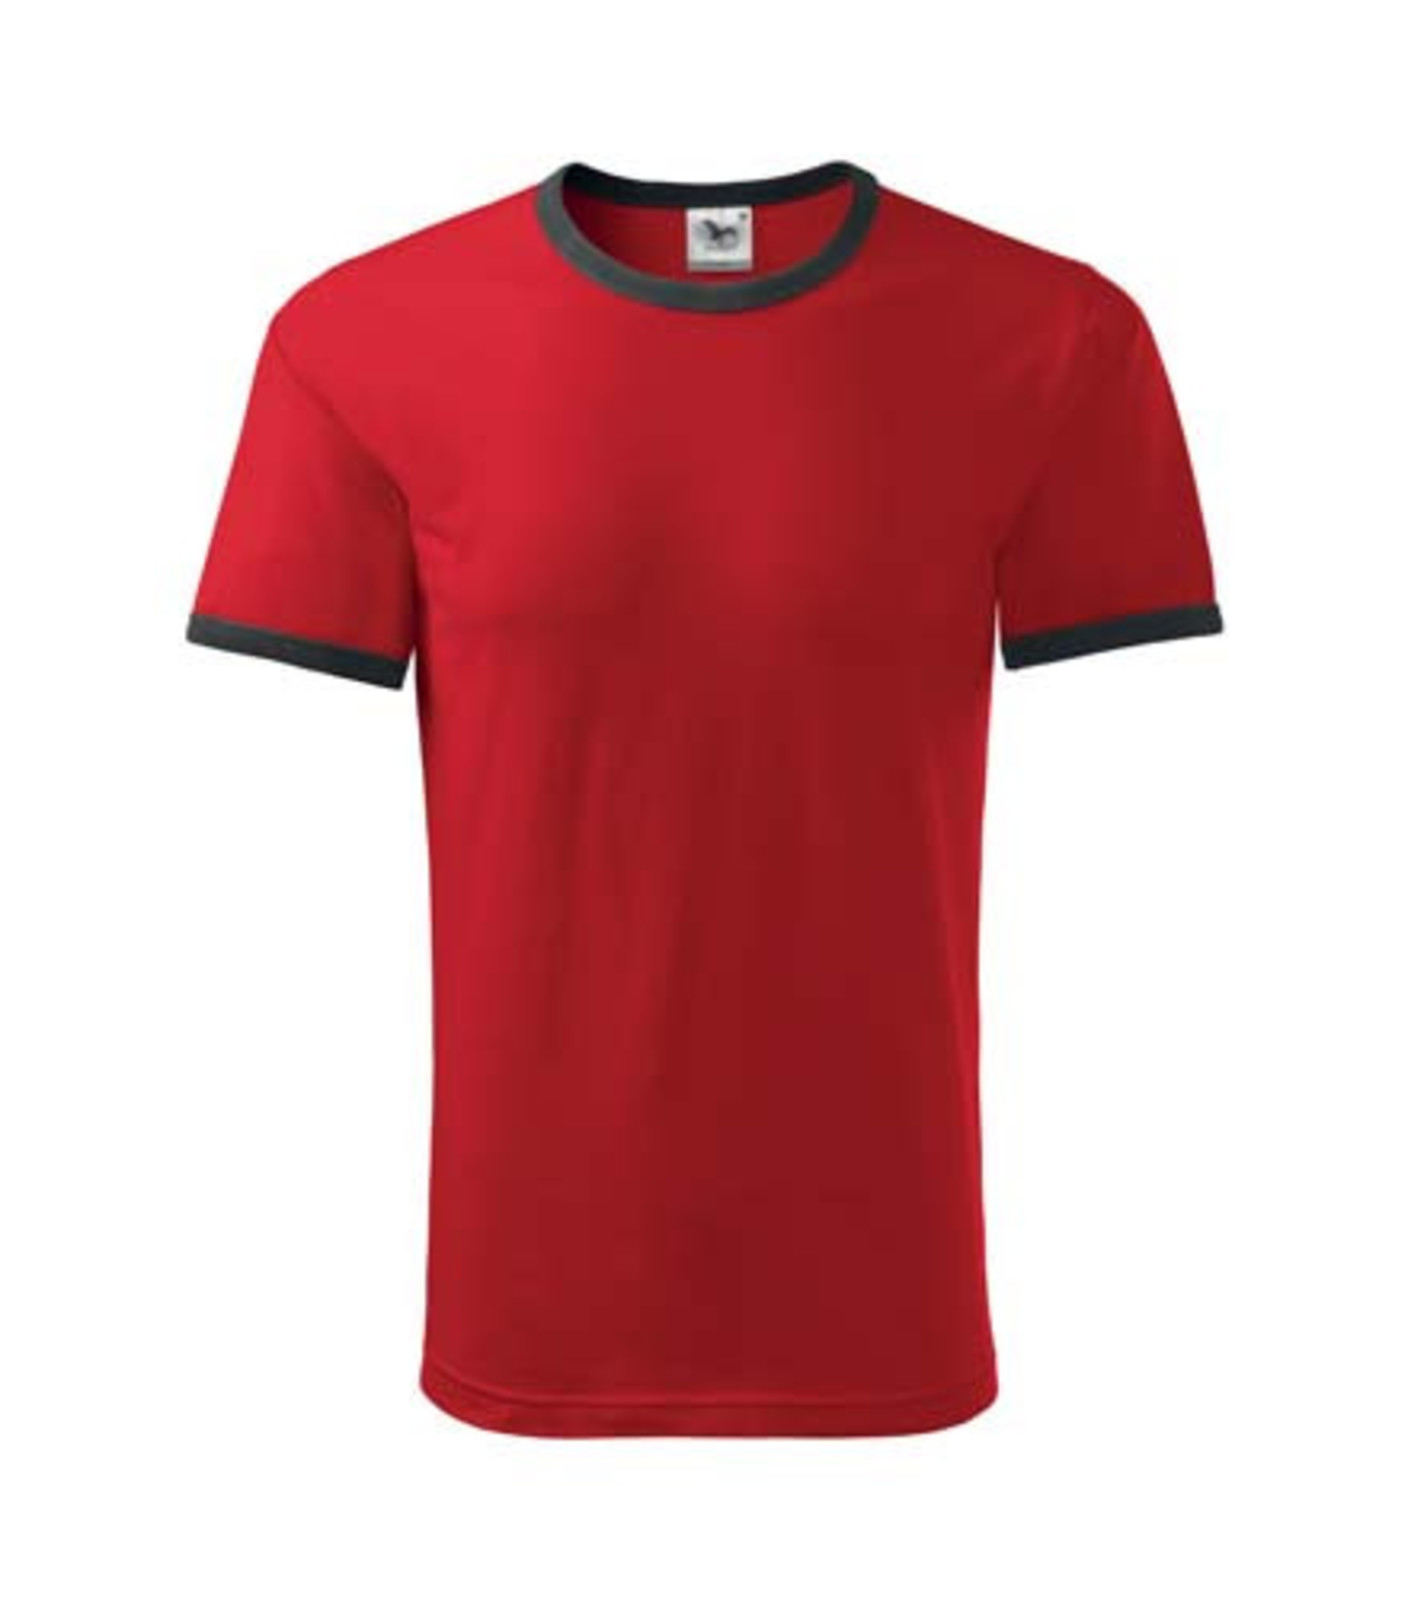 Unisex tričko Adler Infinity 131 - veľkosť: M, farba: čierna/červená